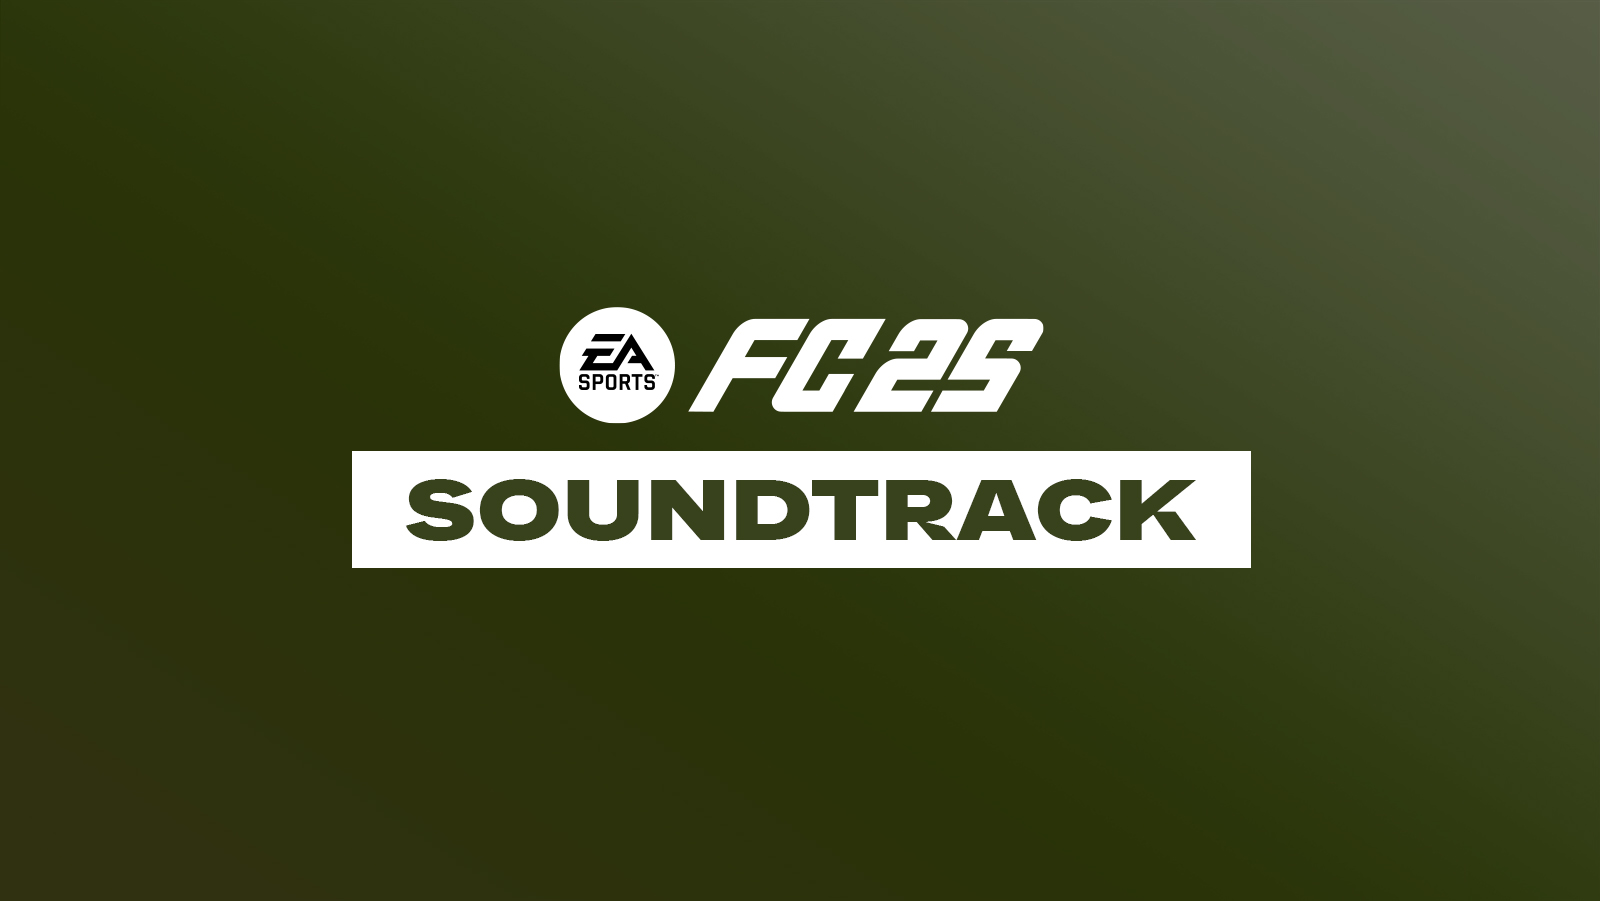 FC 25 Soundtrack